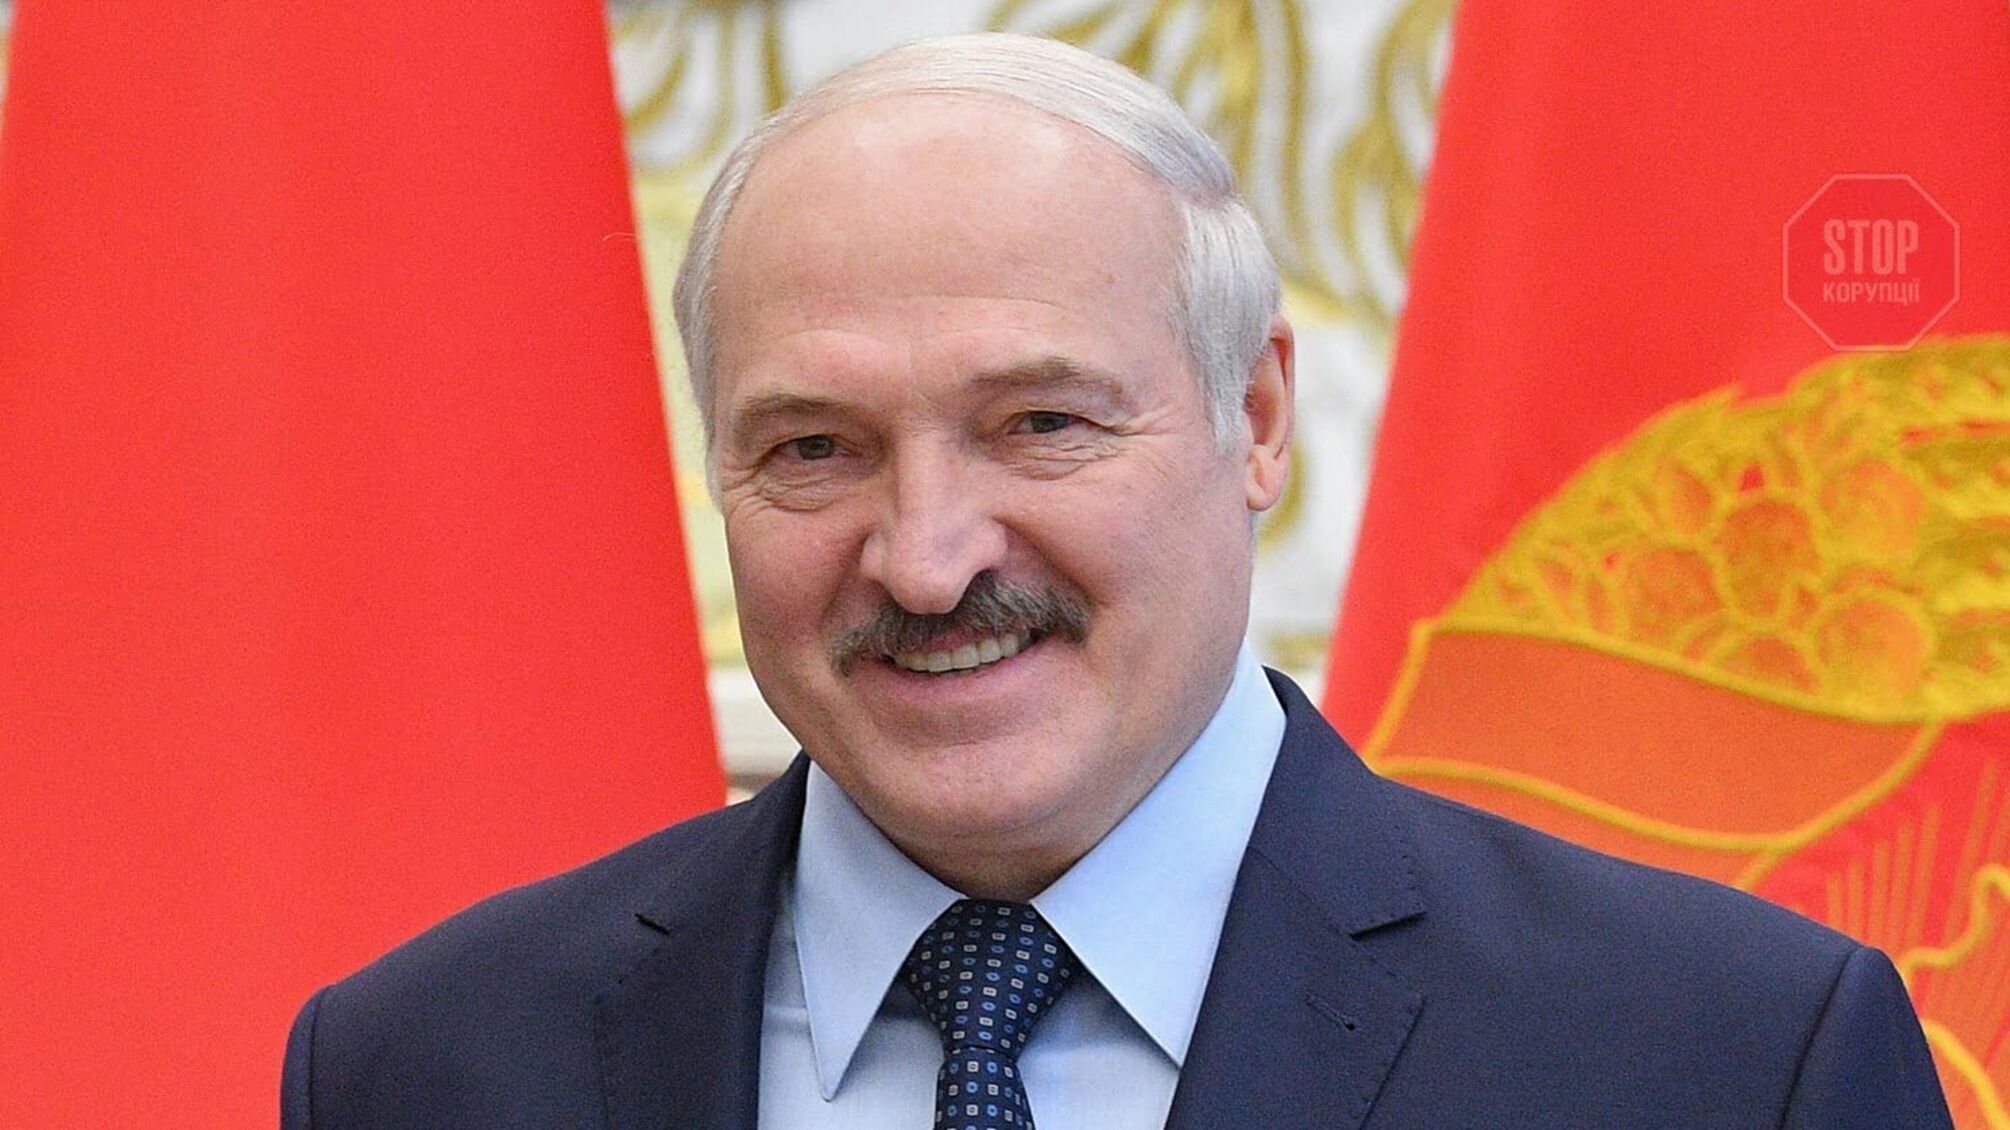 ''Білорусь стає ядерною державою'', – Лукашенко